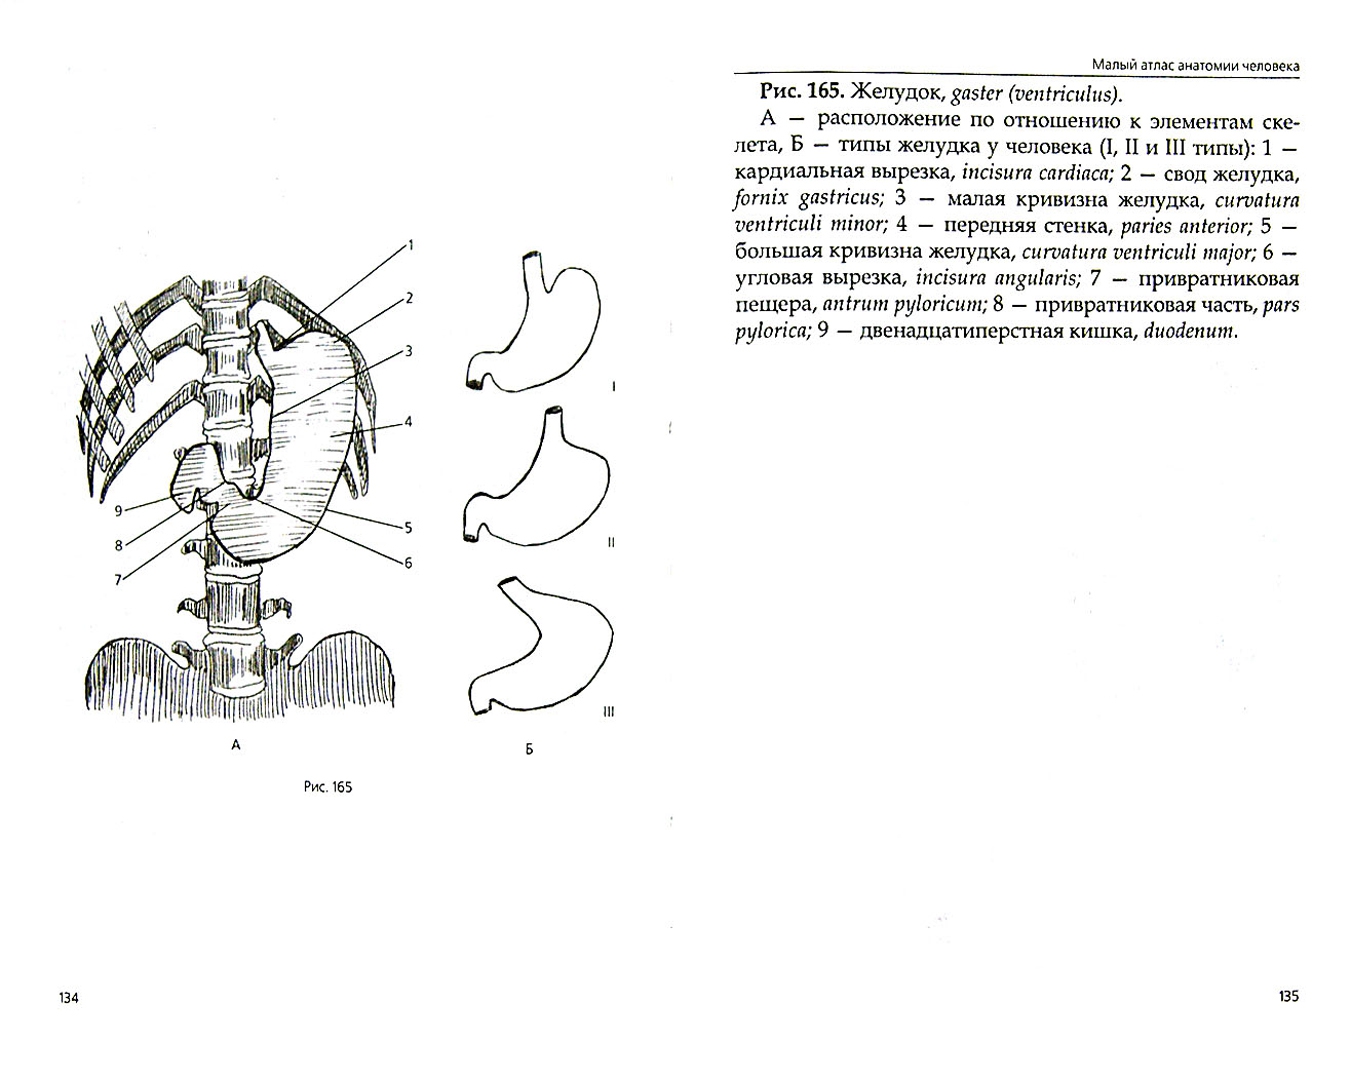 Иллюстрация 1 из 6 для Малый атлас анатомии человека - Т. Селезнева | Лабиринт - книги. Источник: Лабиринт